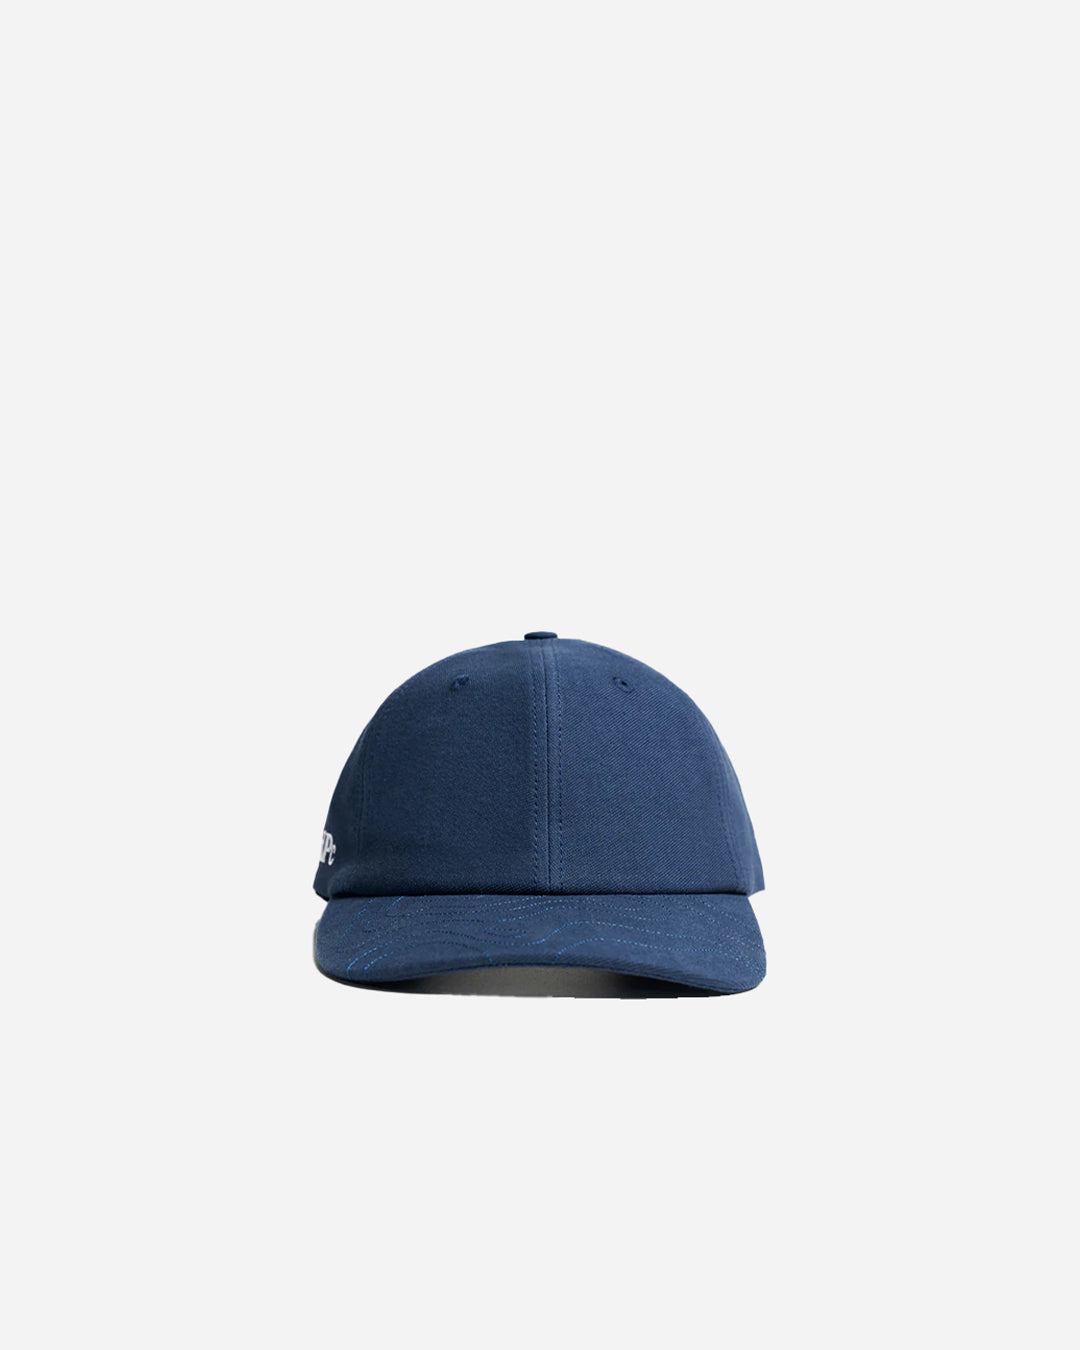 TOPO COTTON CAP